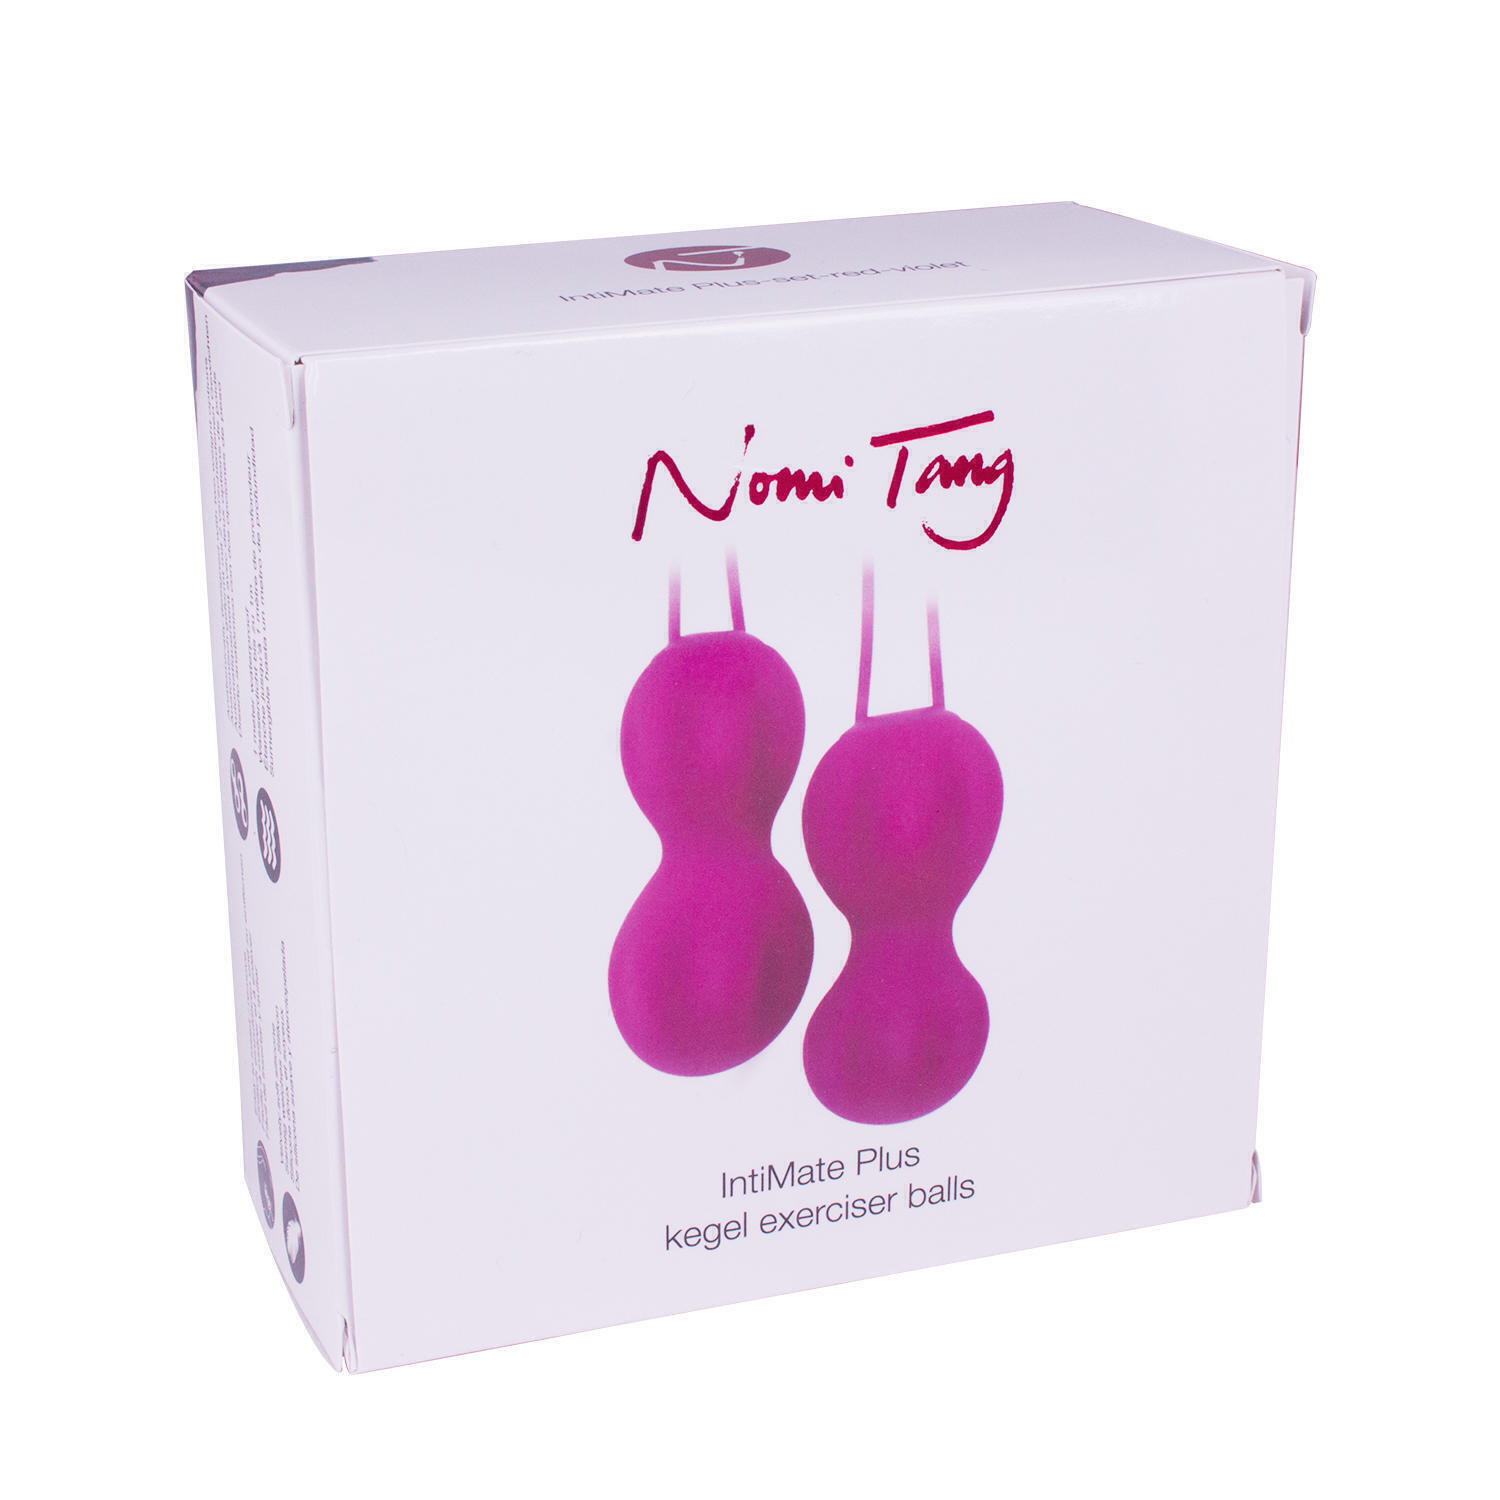 Набор вагинальных шариков Nomi Tang IntiMate Plus, фуксия